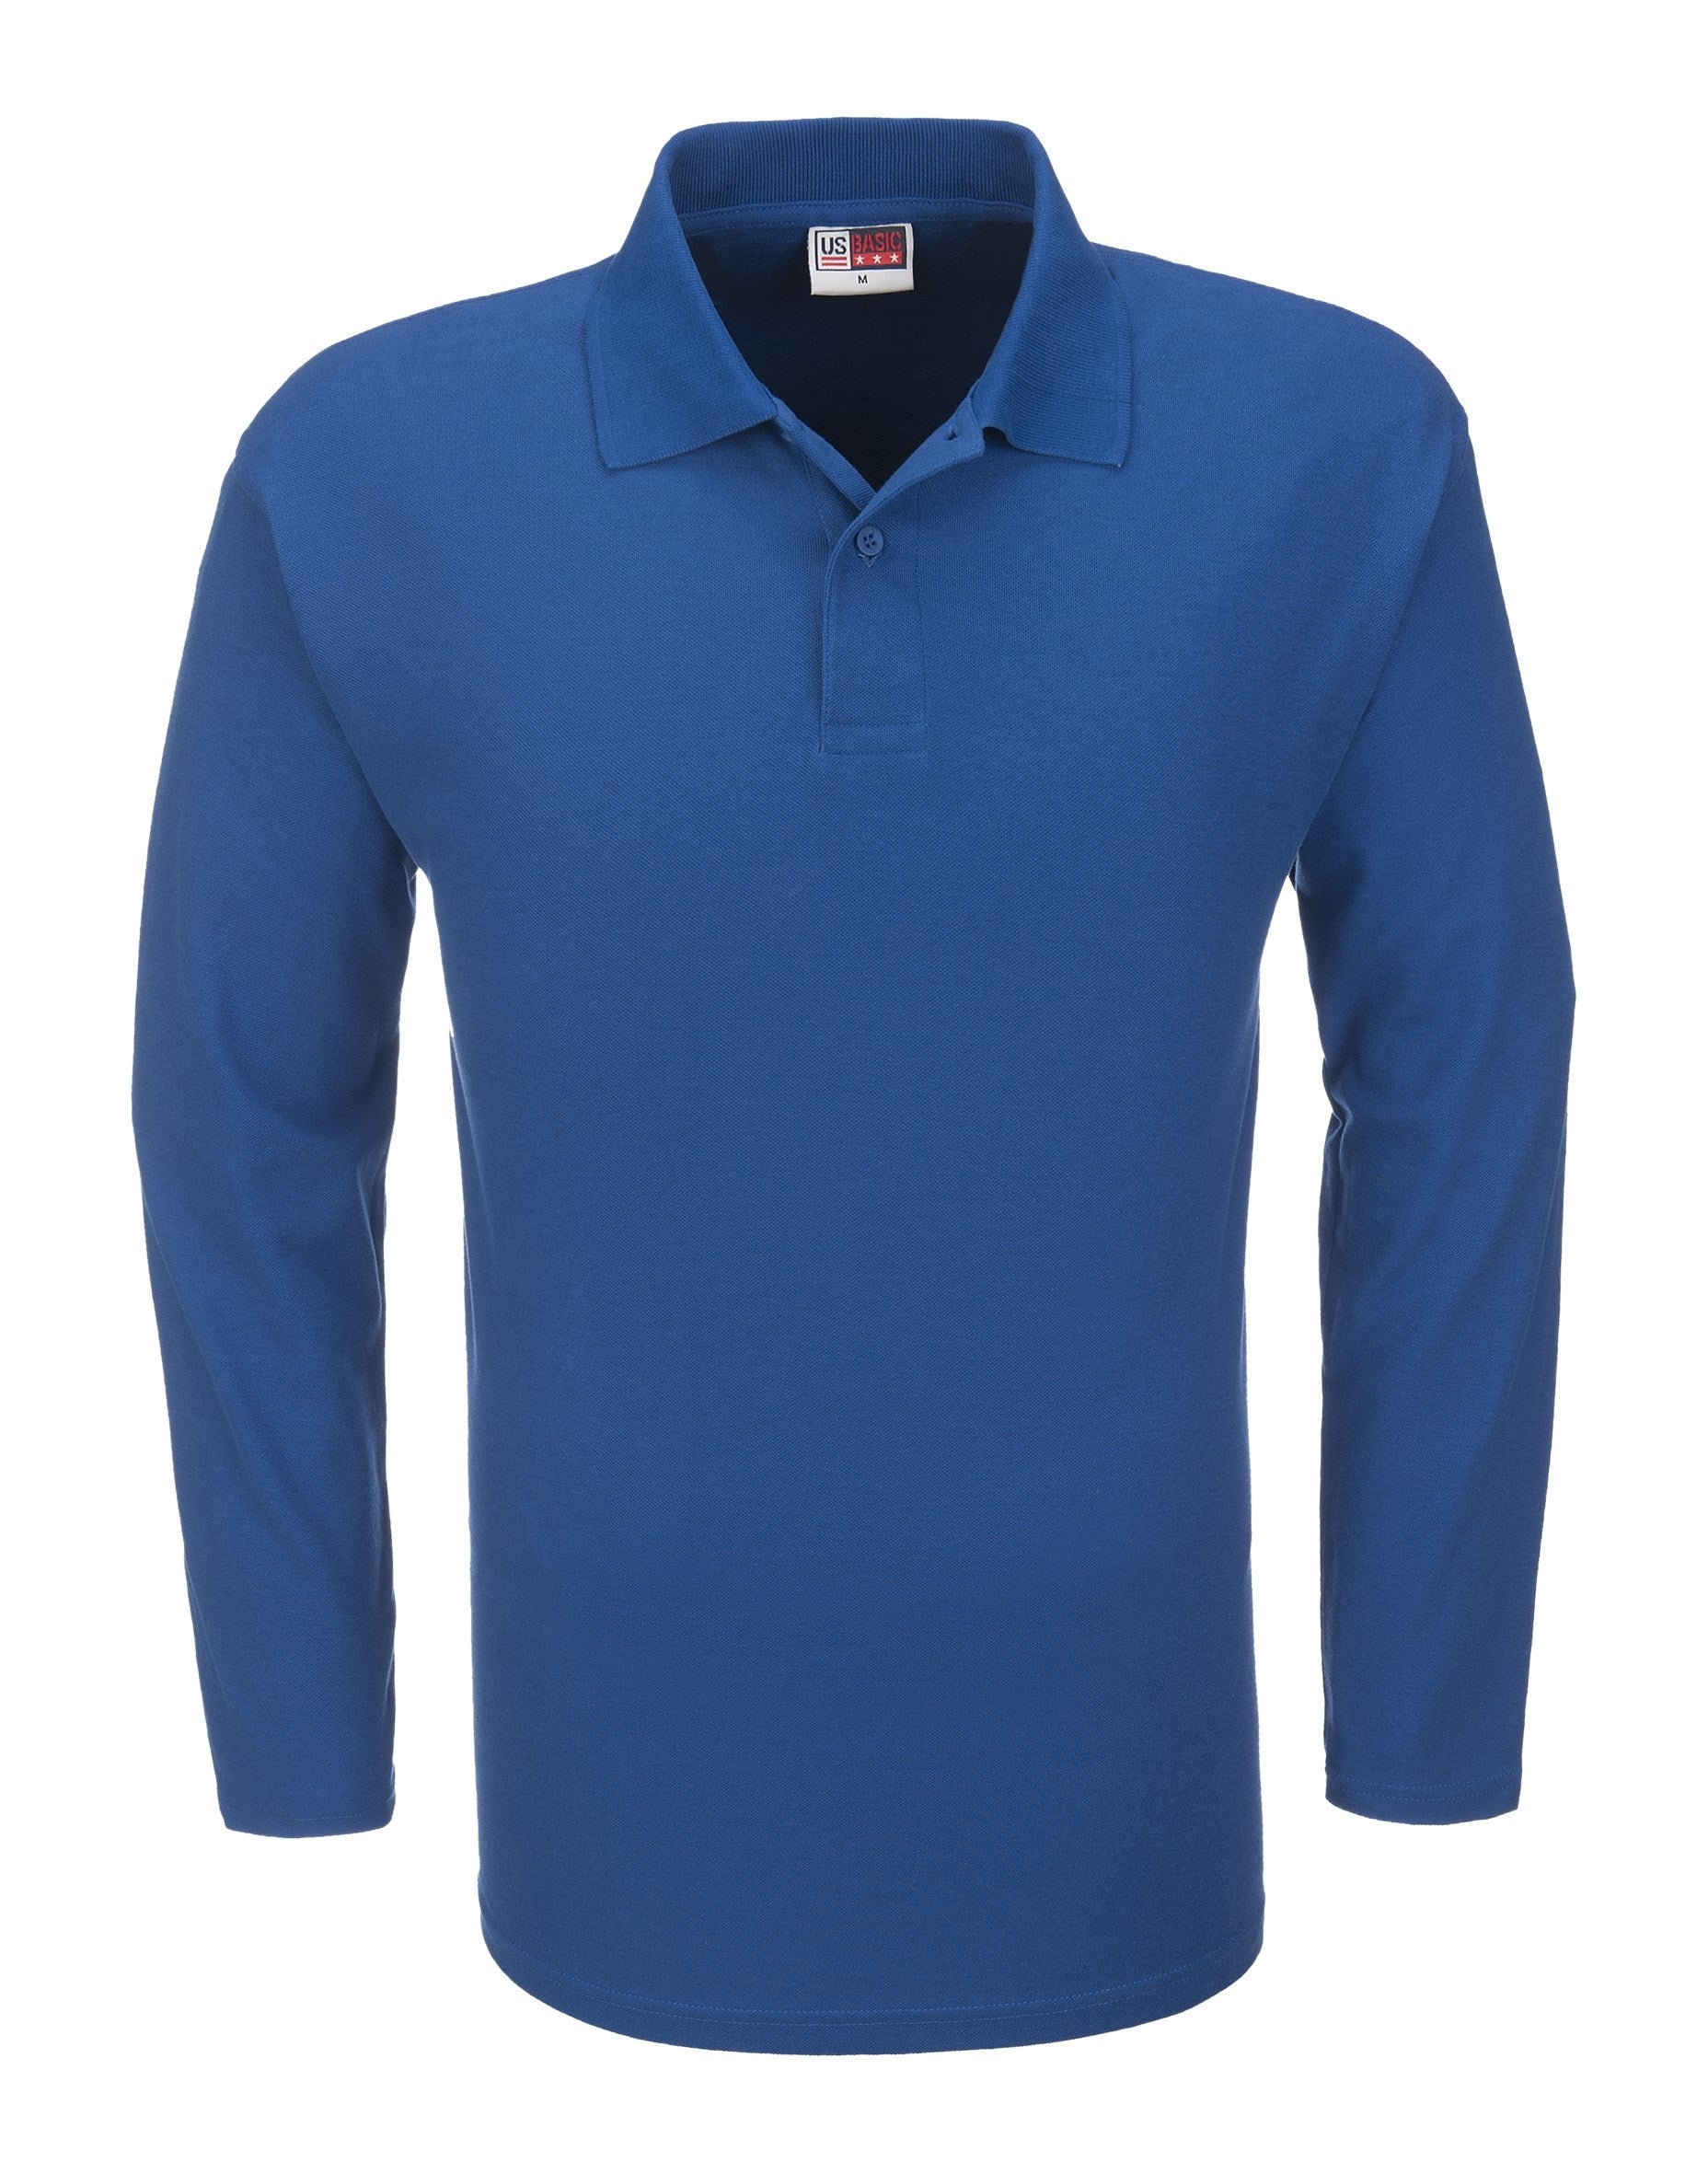 Mens Long Sleeve Boston Golf Shirt - Black Only-2XL-Blue-BU